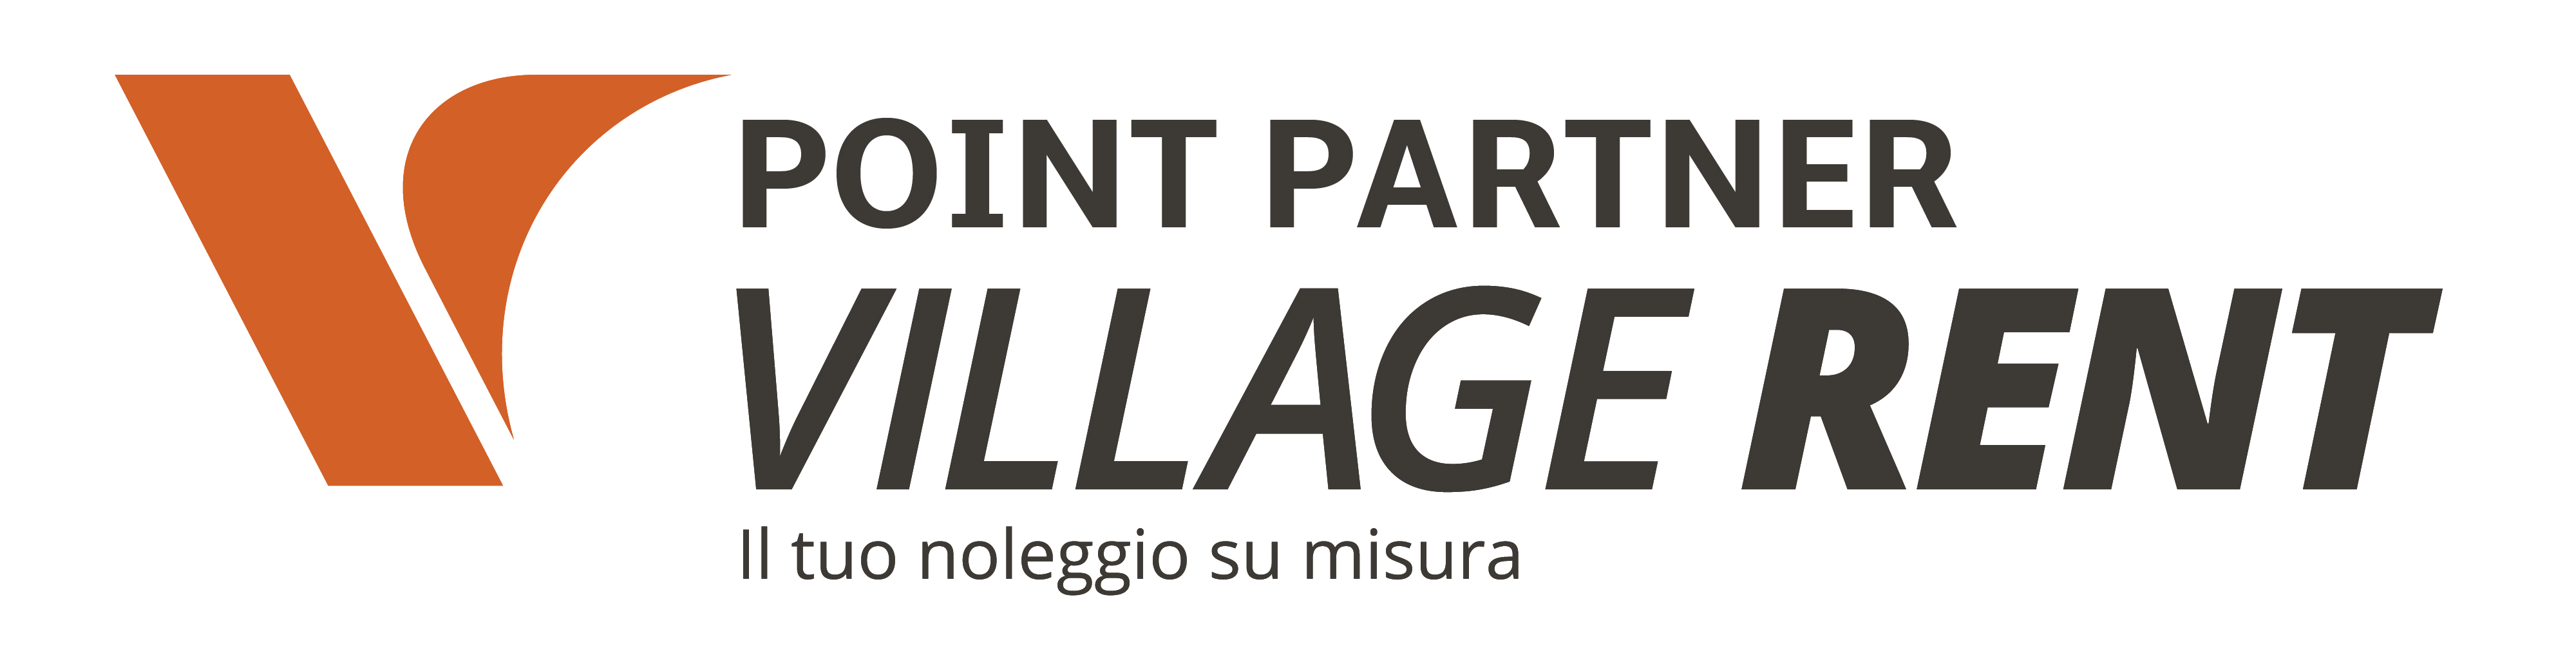 logo-point-partner